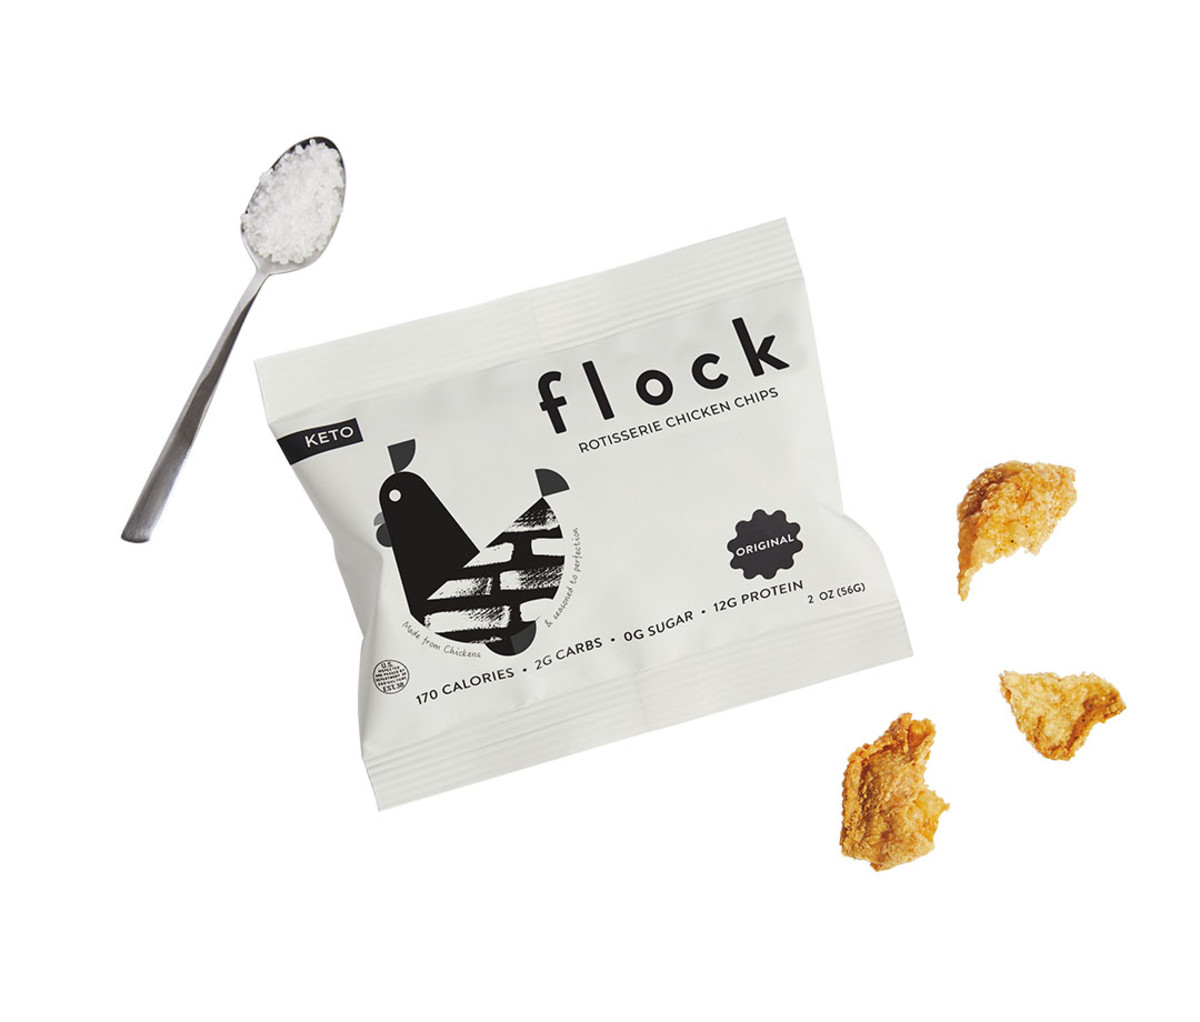 nutritious snacks; Flock Rotisserie Chicken Chips